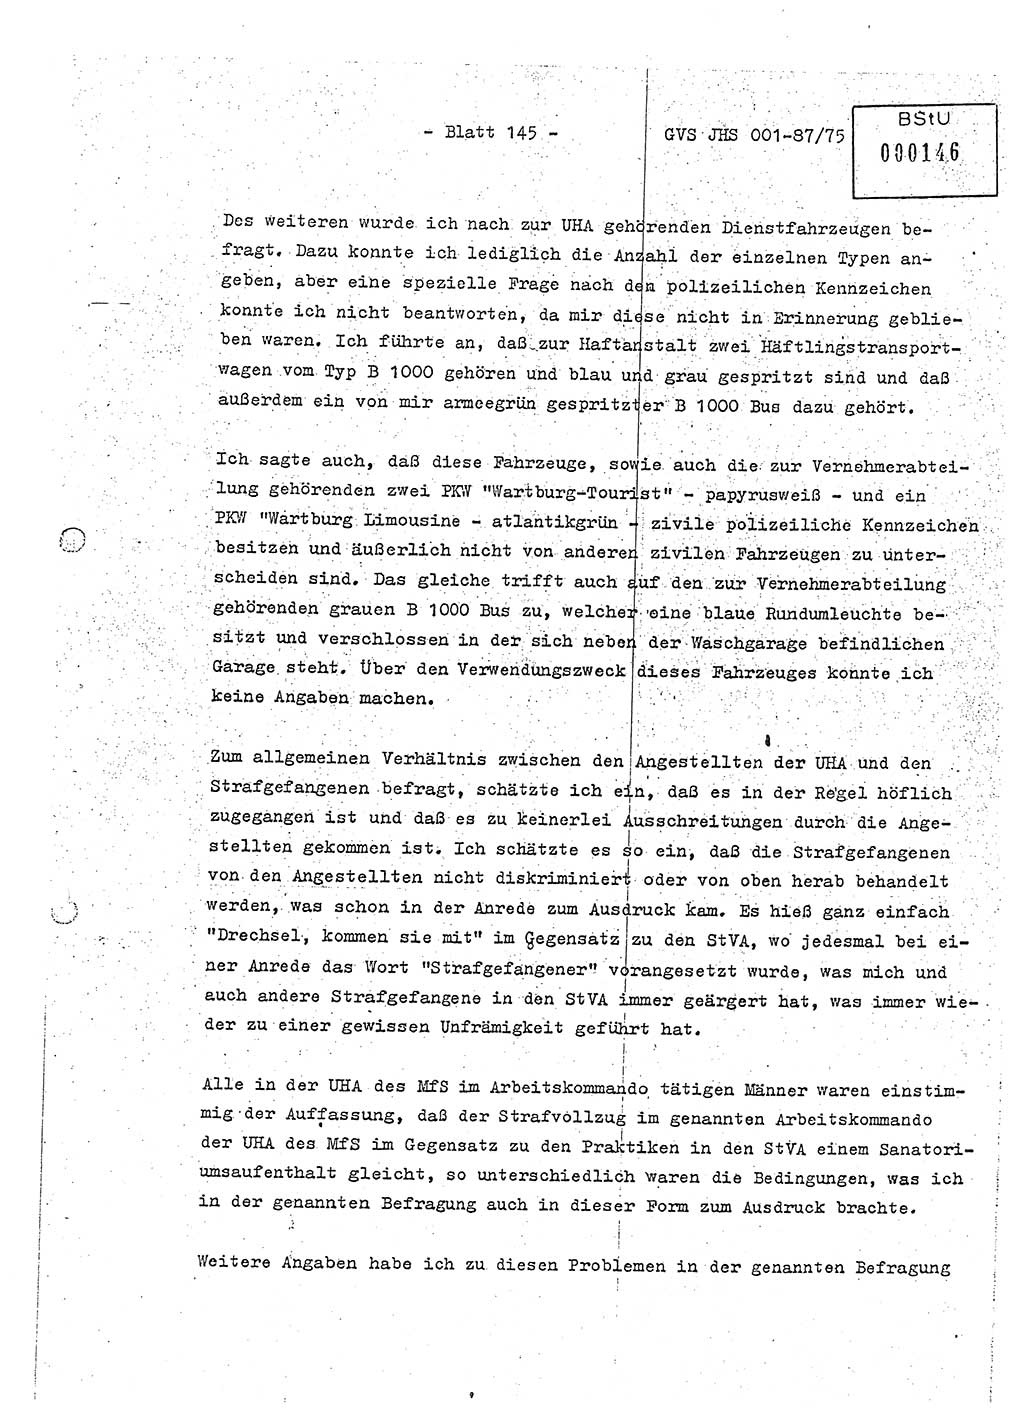 Diplomarbeit Hauptmann Volkmar Heinz (Abt. ⅩⅣ), Oberleutnant Lothar Rüdiger (BV Lpz. Abt. Ⅺ), Ministerium für Staatssicherheit (MfS) [Deutsche Demokratische Republik (DDR)], Juristische Hochschule (JHS), Geheime Verschlußsache (GVS) o001-87/75, Potsdam 1975, Seite 145 (Dipl.-Arb. MfS DDR JHS GVS o001-87/75 1975, S. 145)